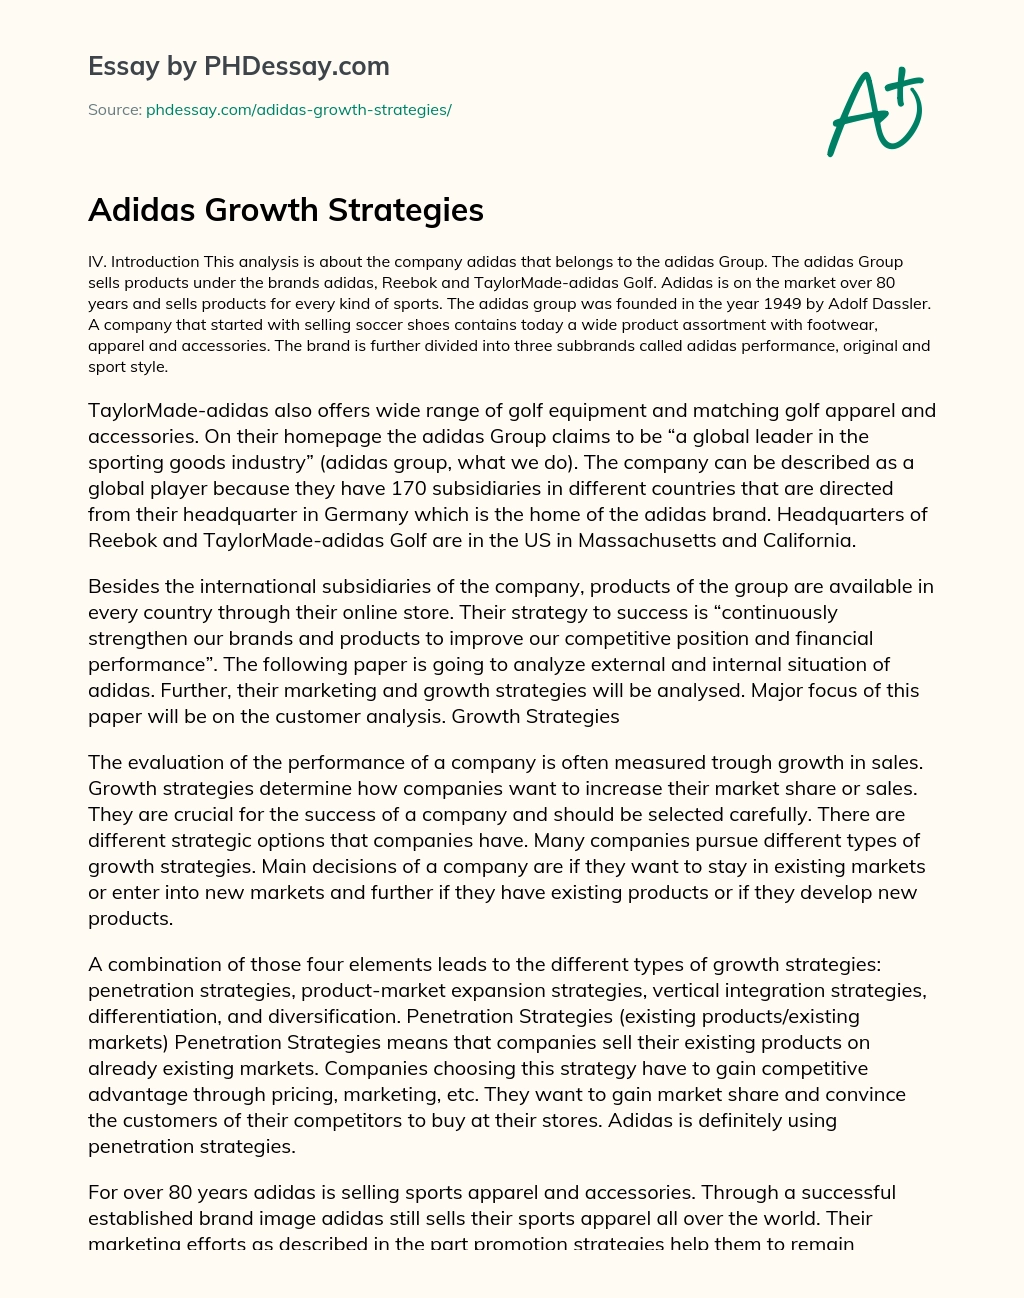 Adidas Growth Strategies essay